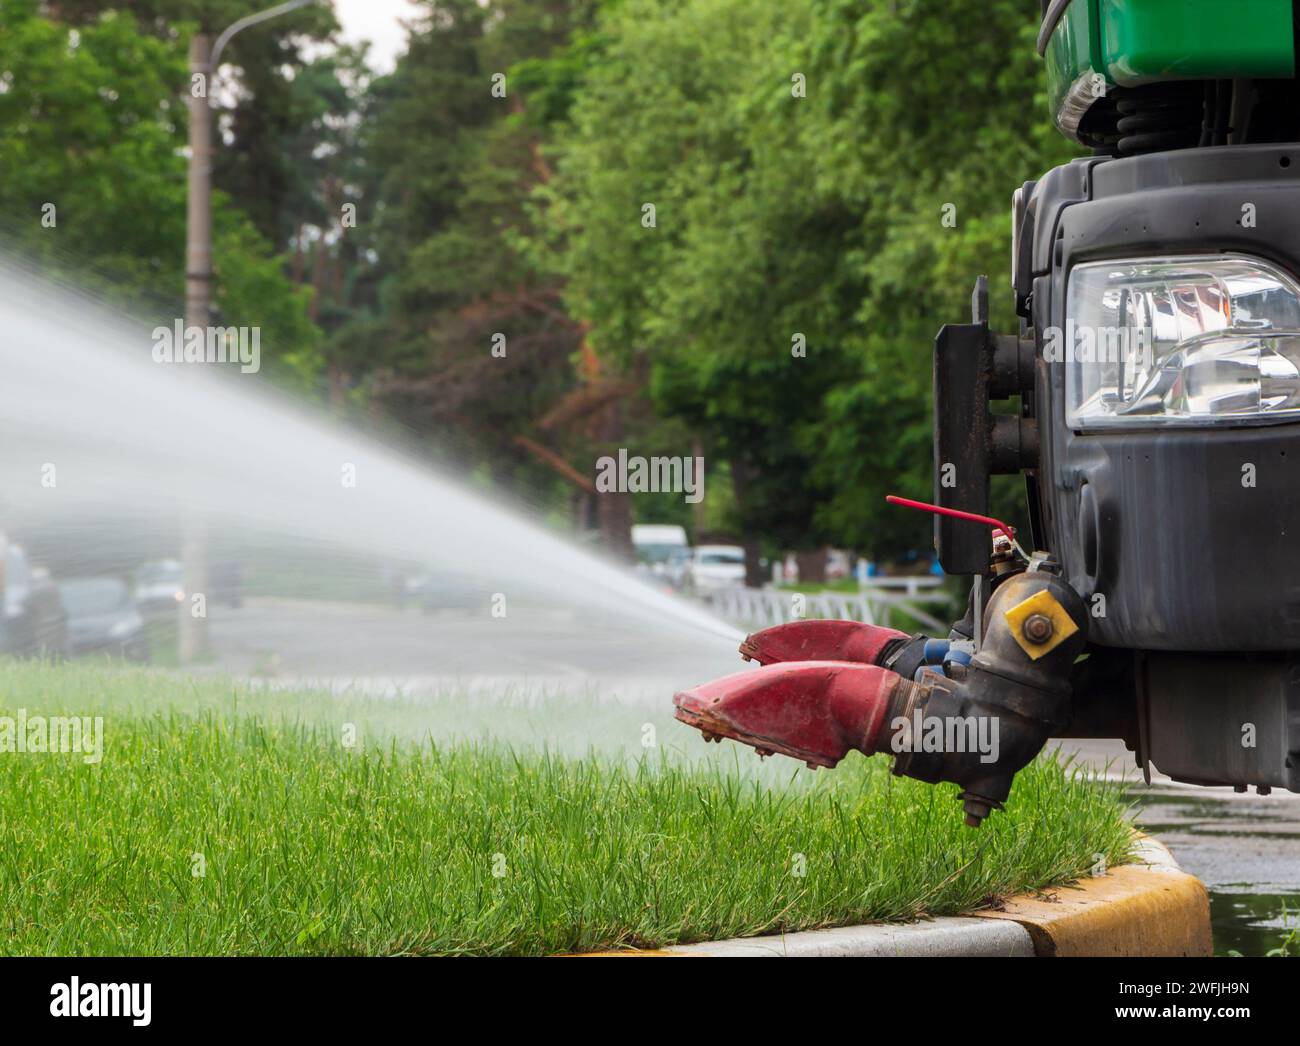 Nahaufnahme eines kommunalen Lastwagens, der den Rasen auf den Straßen bewässert. Stockfoto